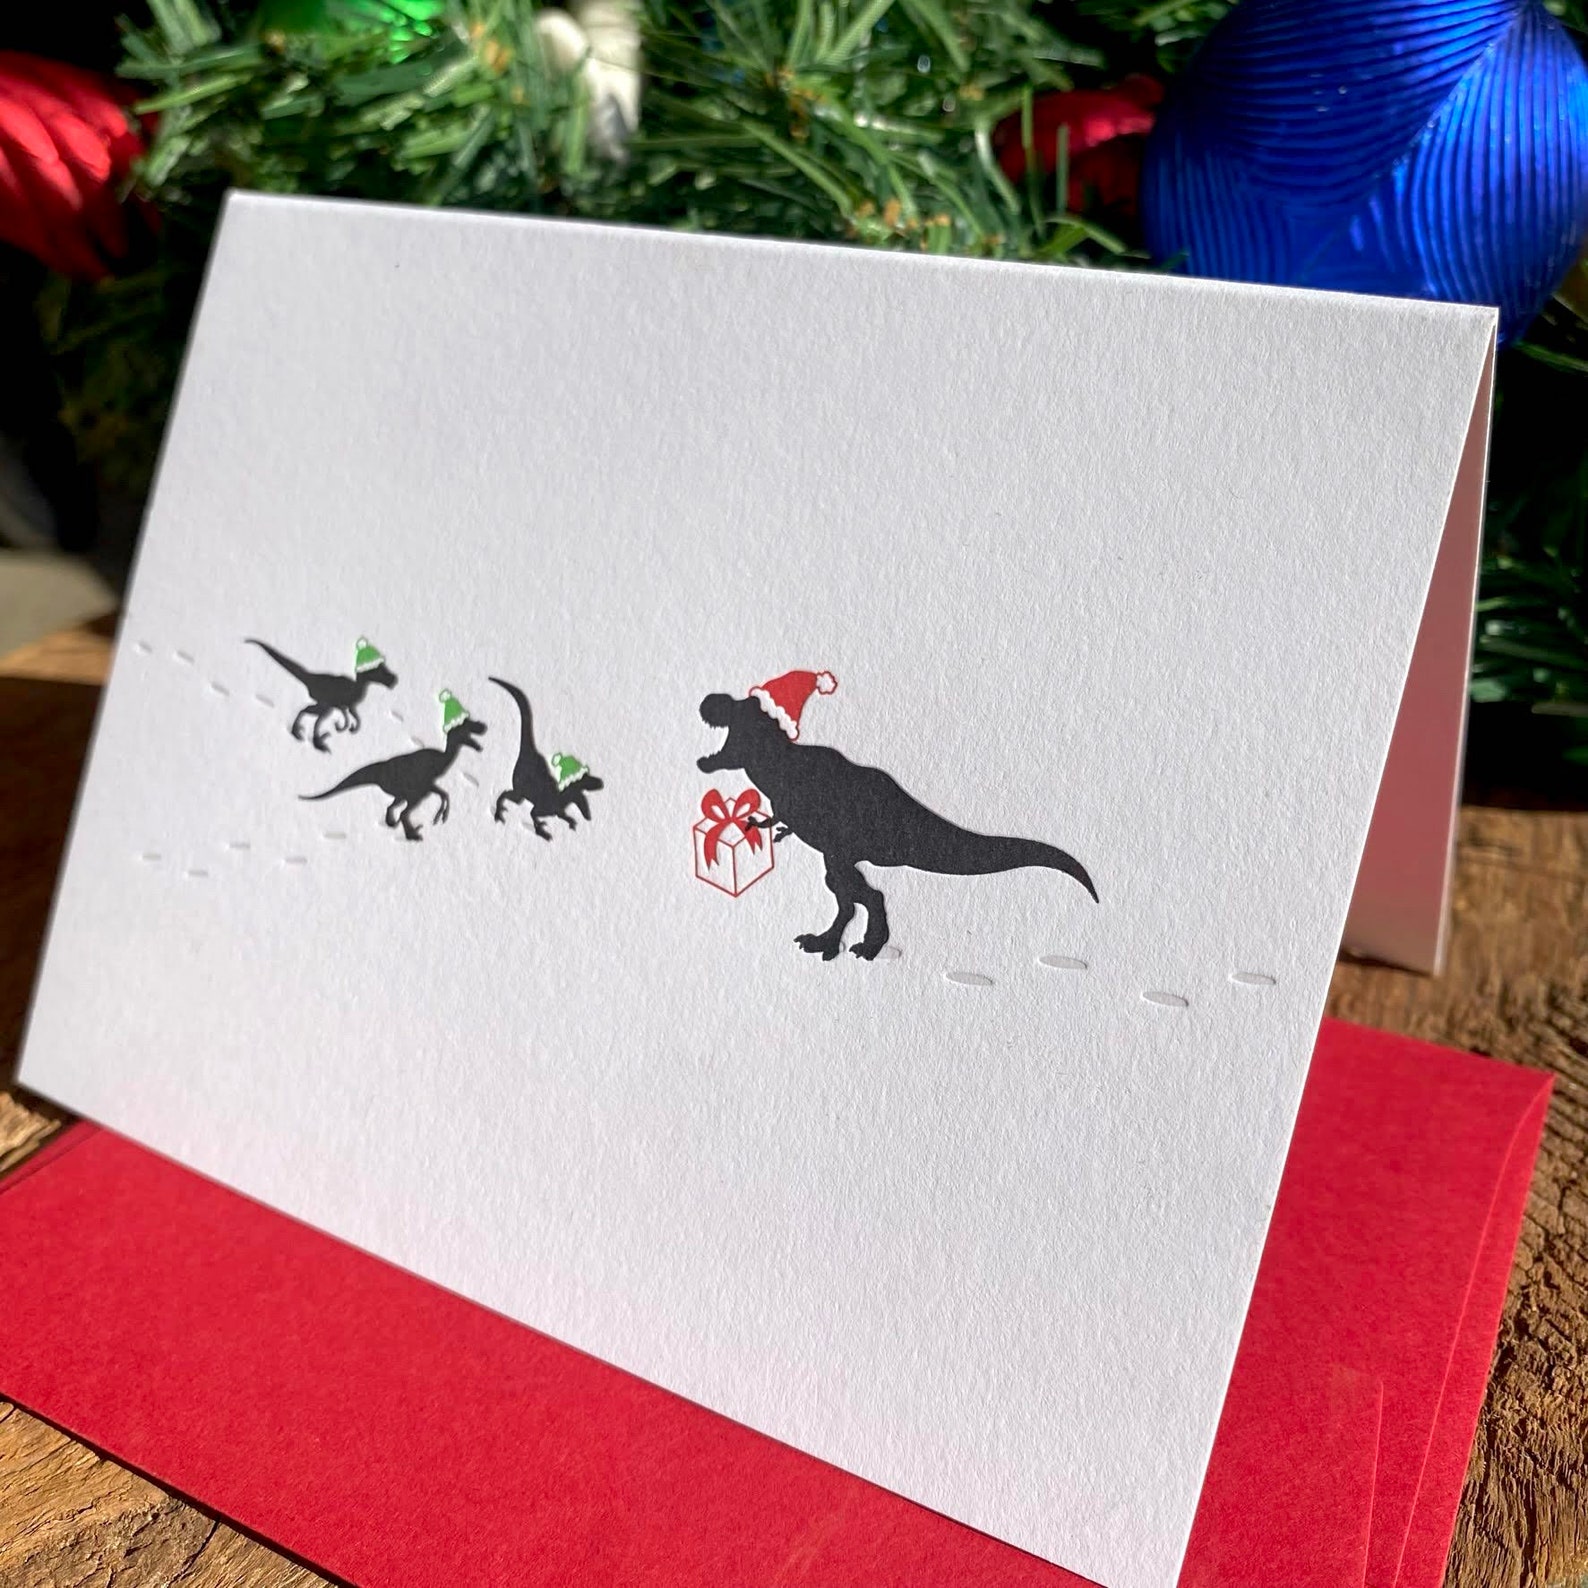 dinosaurs wearing santa hats on a holiday card